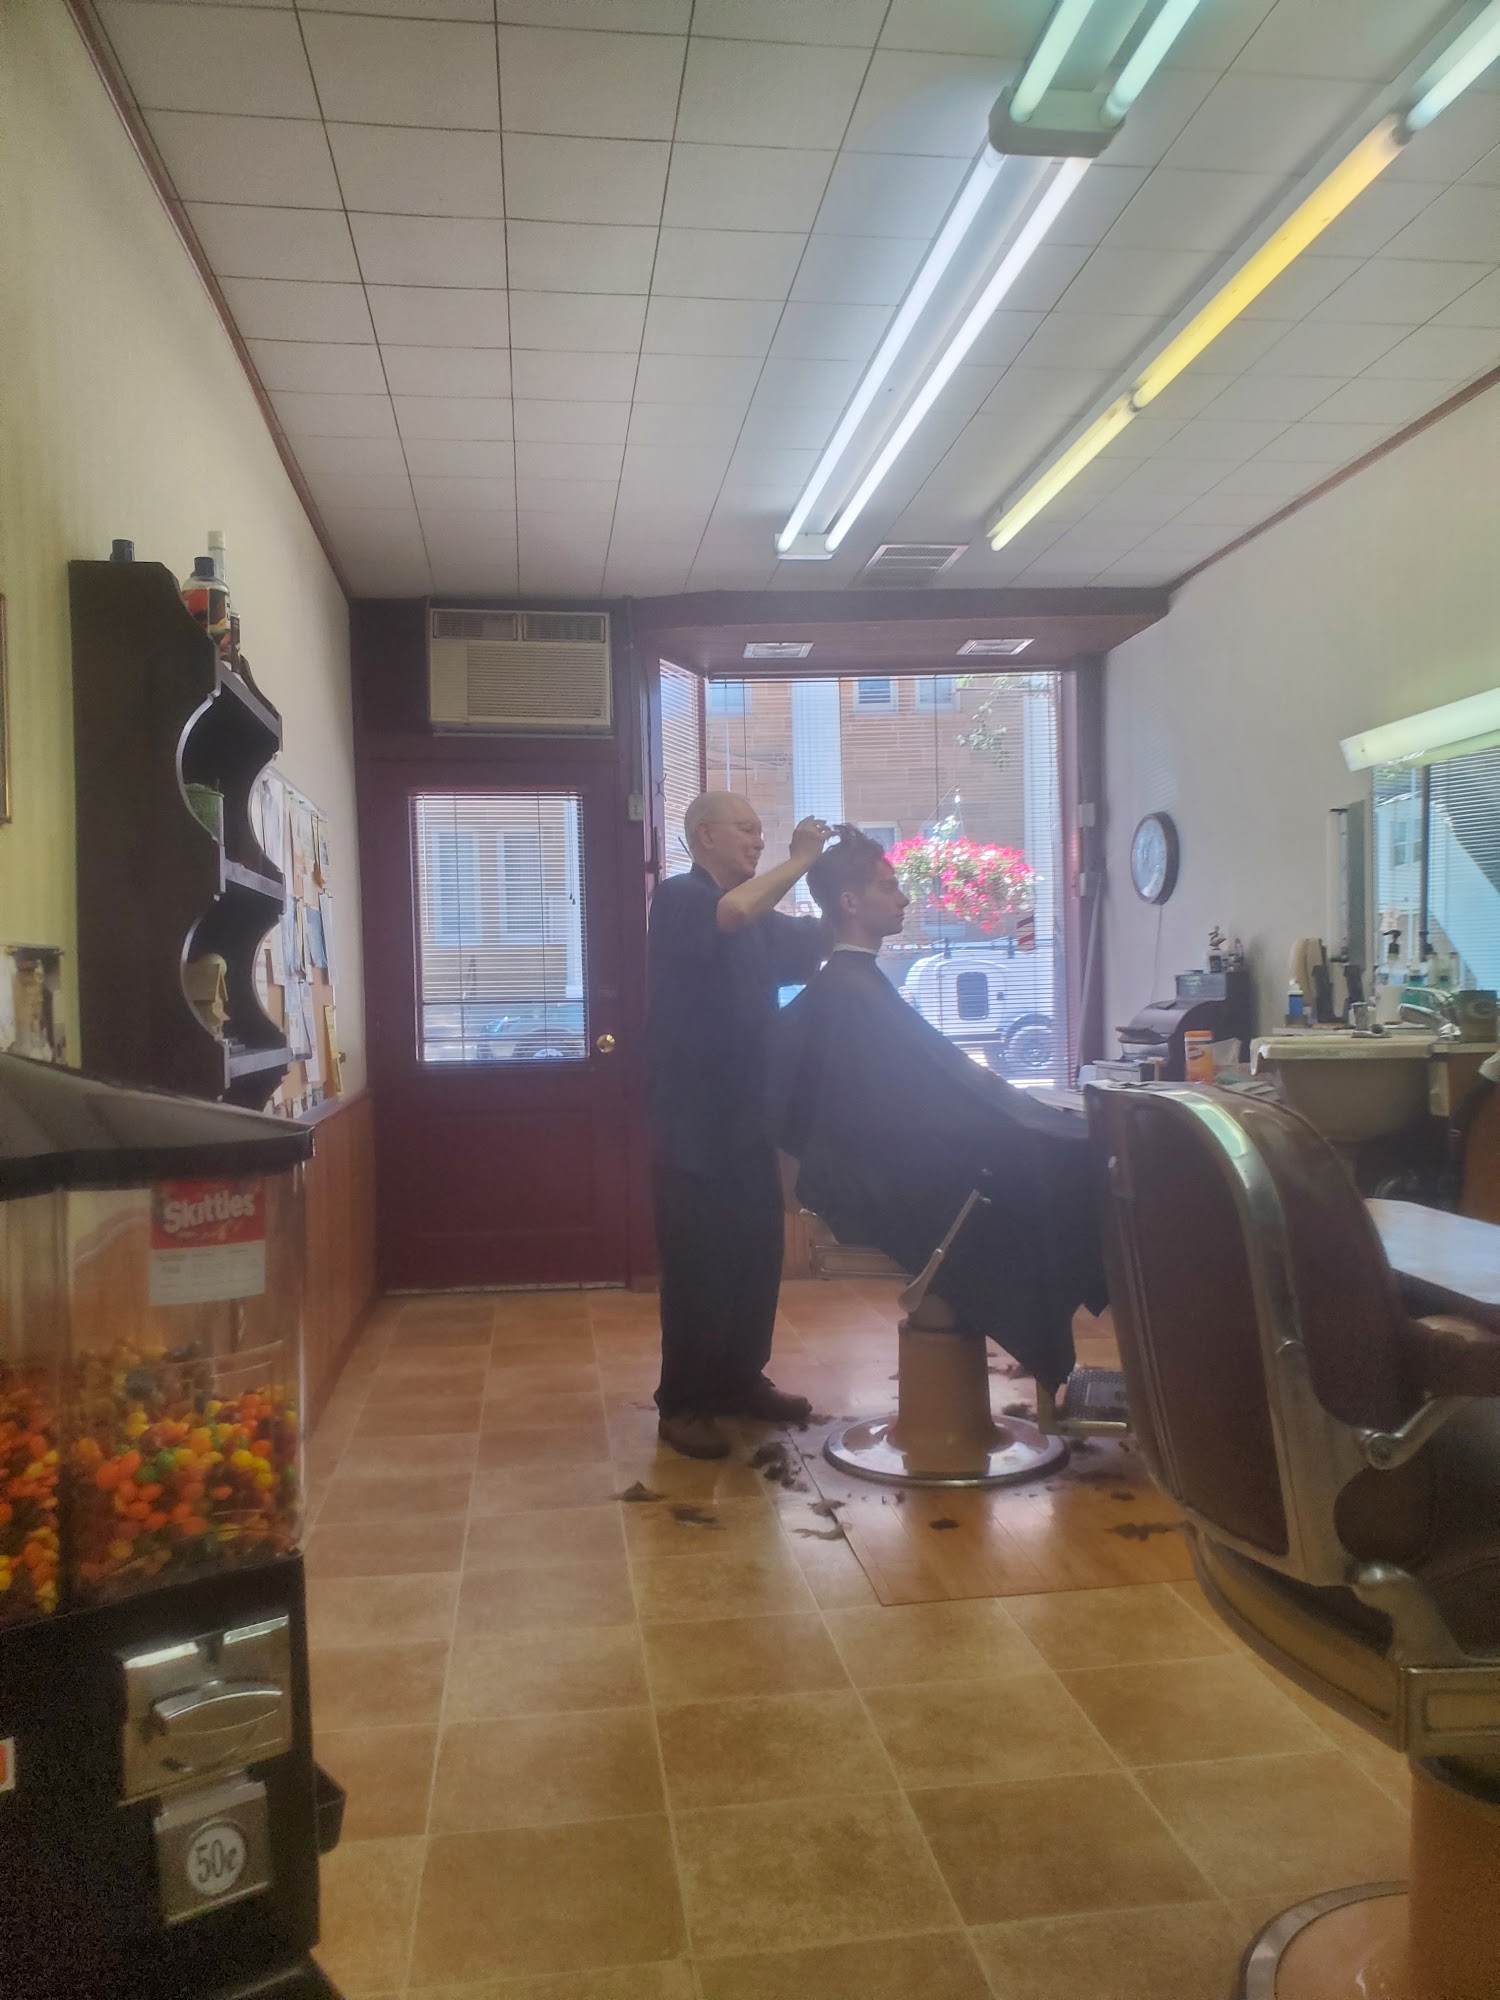 Village Barber Shop 221 N Iowa St, Dodgeville Wisconsin 53533